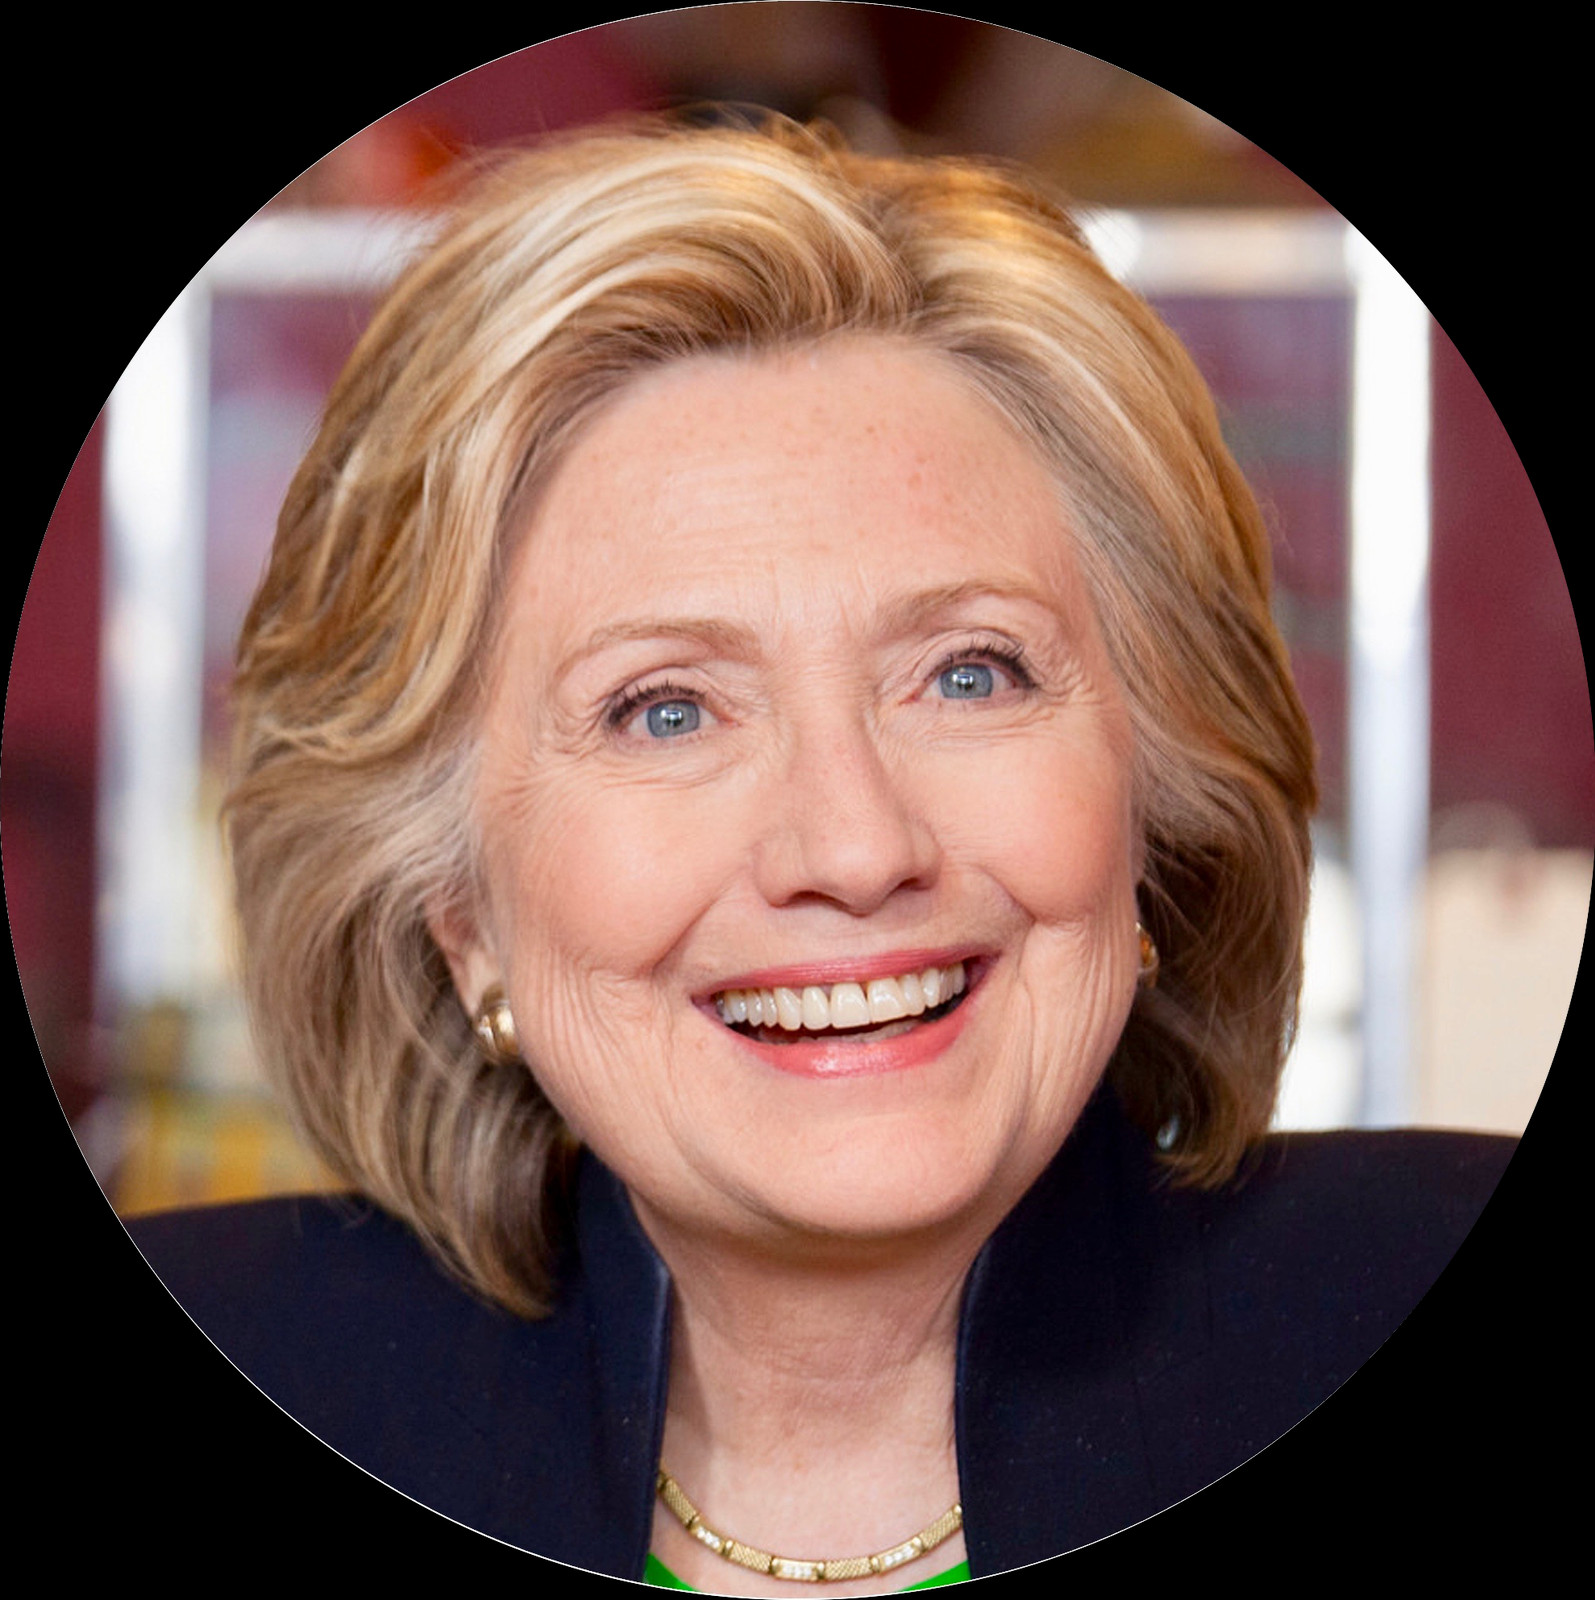 1595x1600 Png Изображение - Хиллари Клинтон, Лицо, Лицо, Человек, Hd Png.